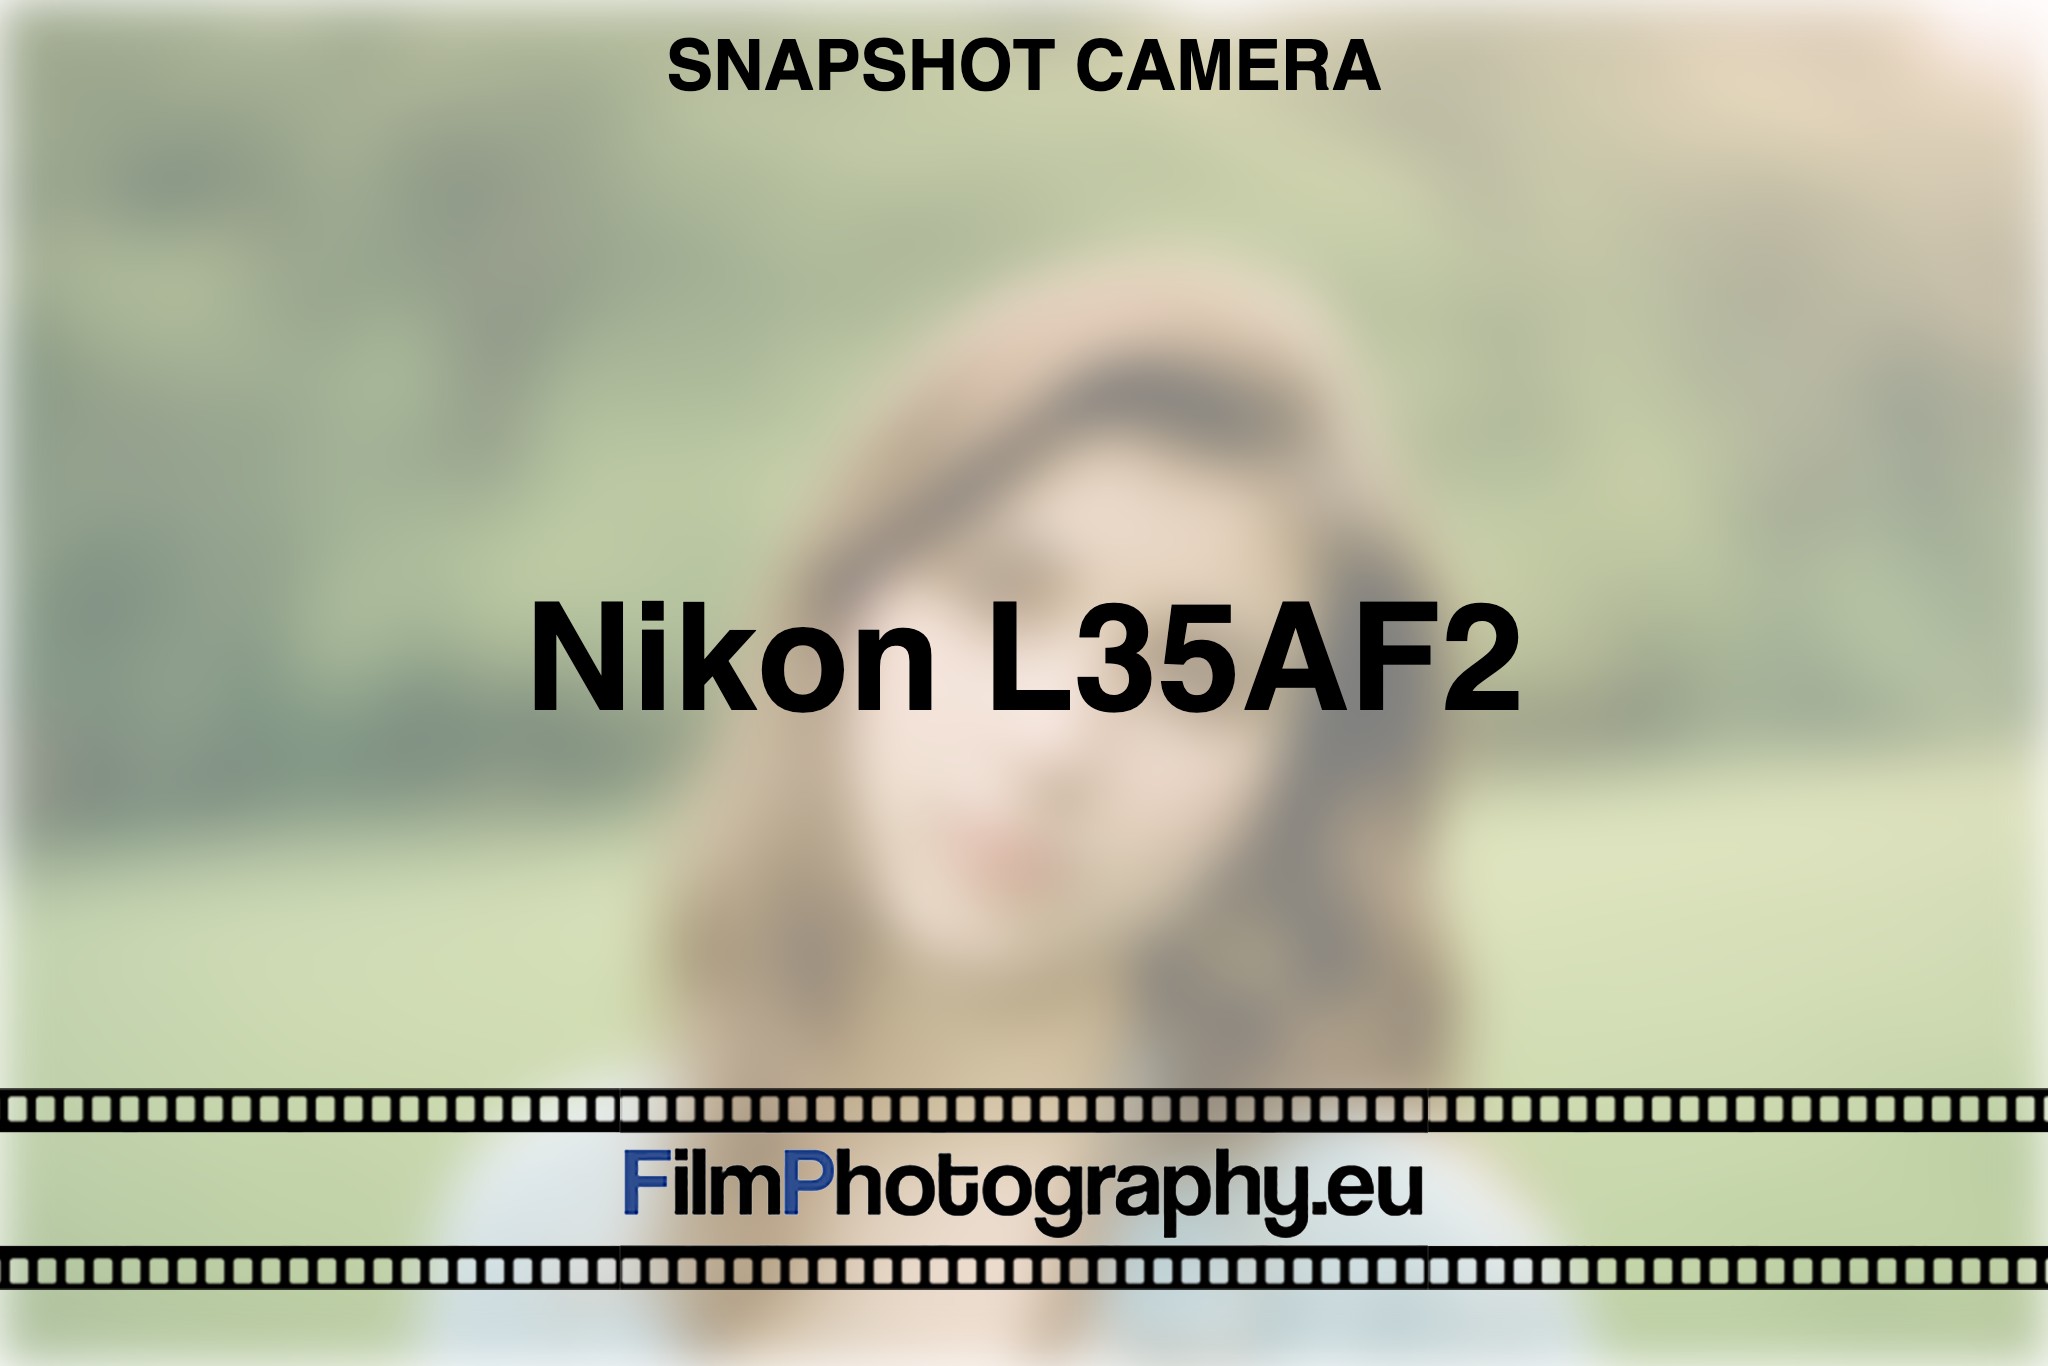 nikon-l35af2-snapshot-camera-bnv